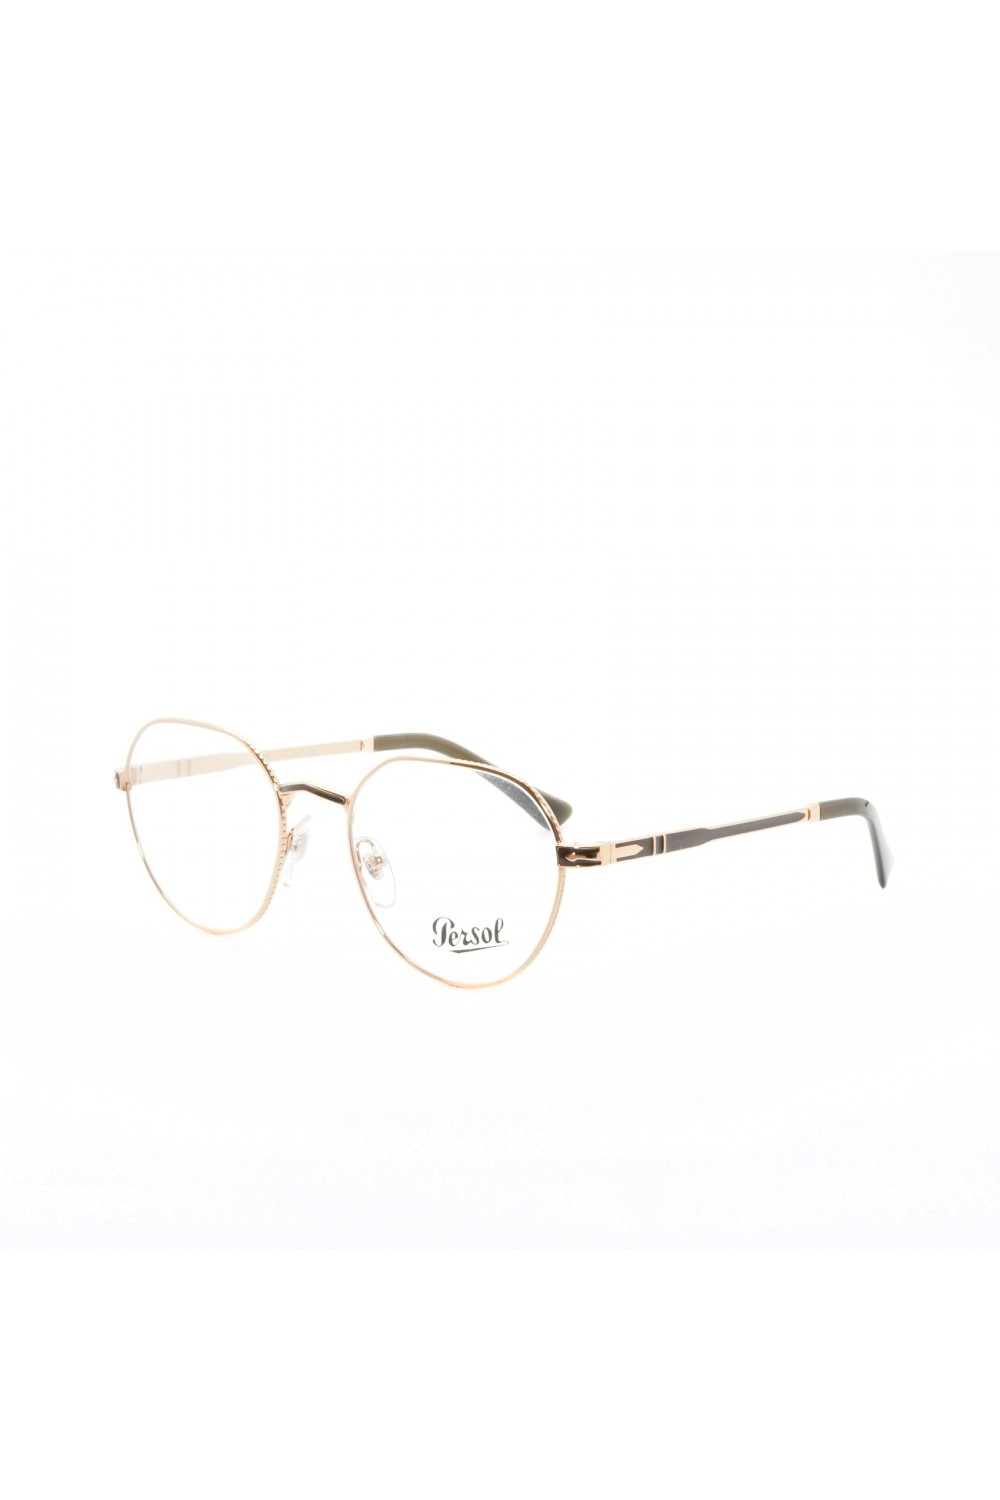 Persol - Occhiali da vista in metallo tondi unisex oro rosa - 2486 1112